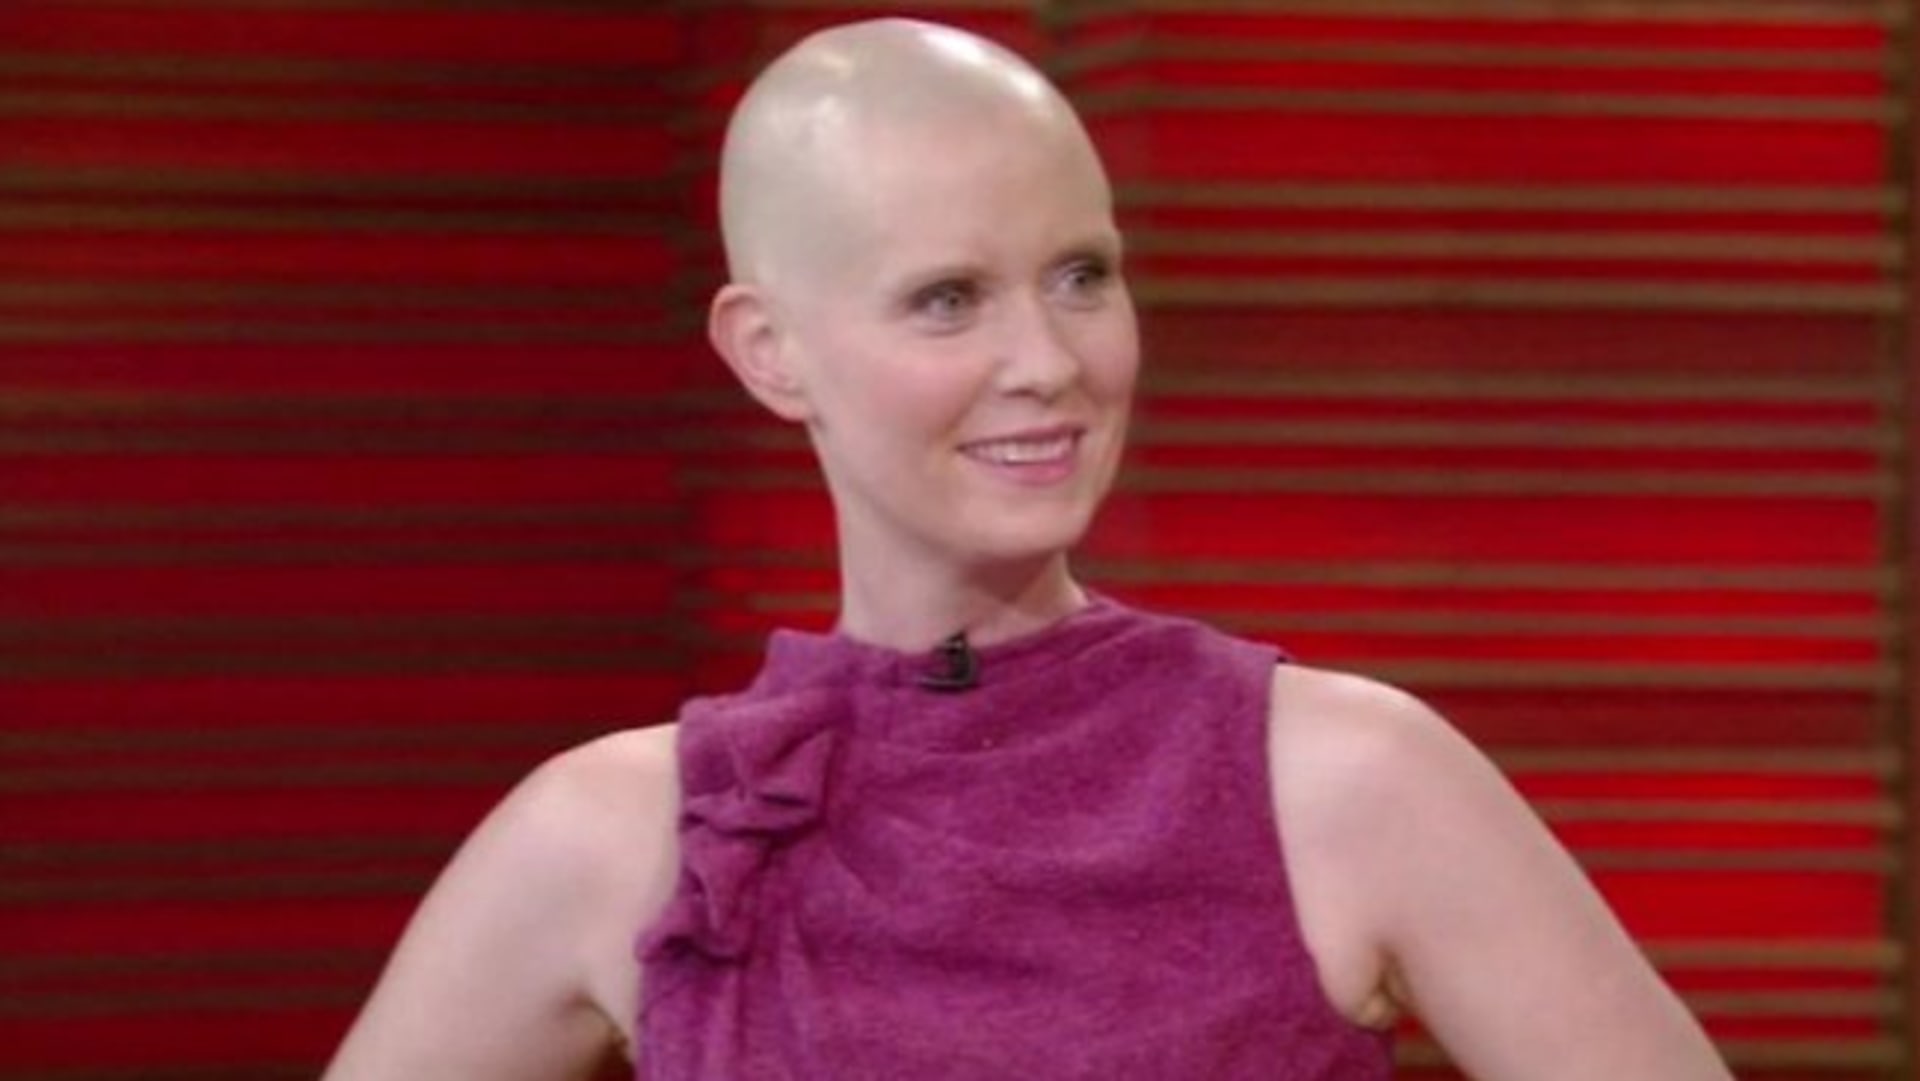 Miranda ze Sexu ve městě onemocněla rakovinou prsu a kvůli náročné chemoterapii přišla o vlasy